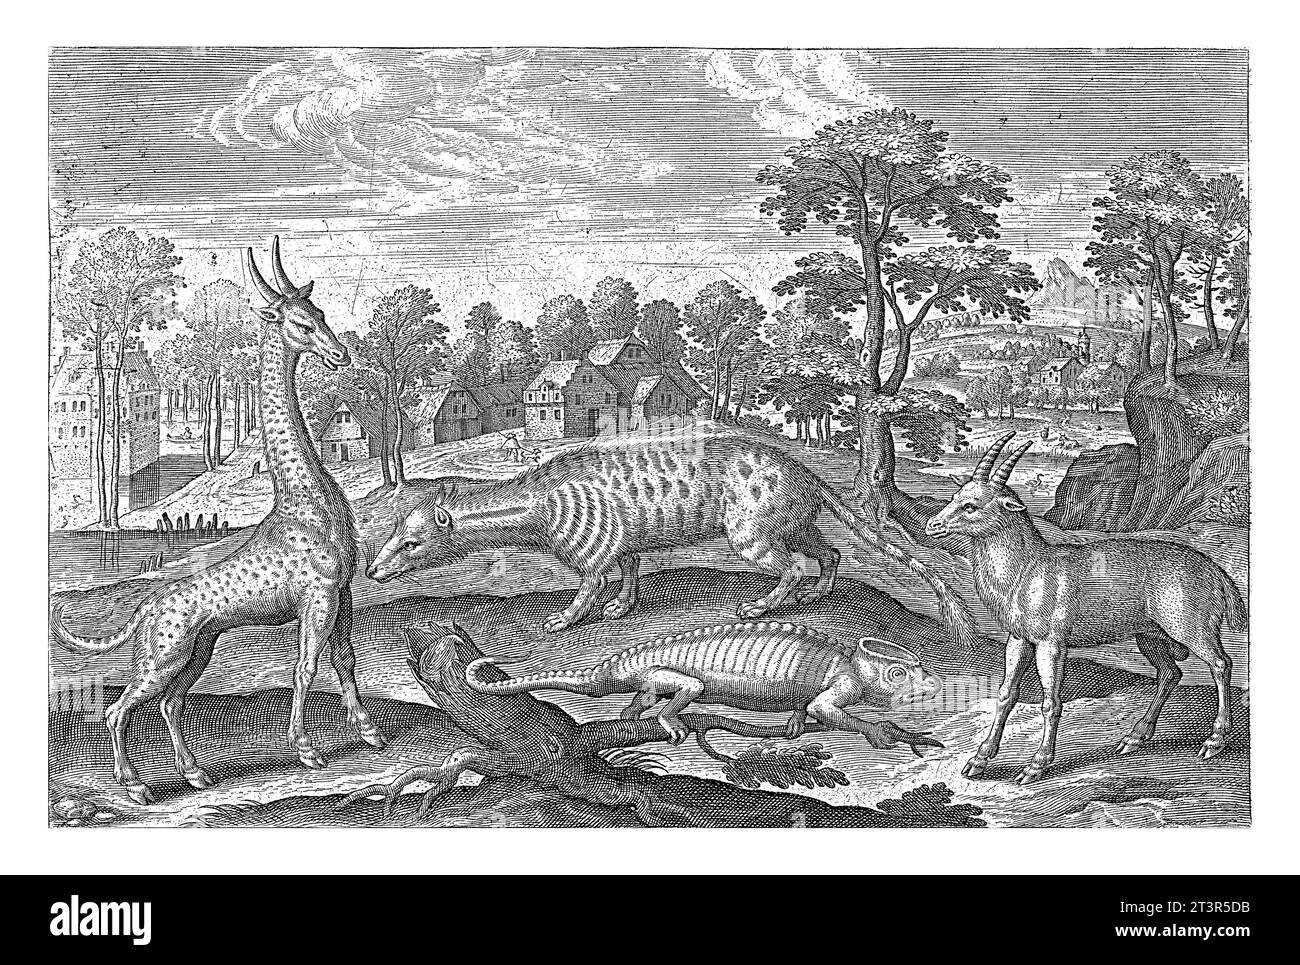 Animales exóticos, Adriaen Collaert, 1595 - 1597 En primer plano una jirafa, un camaleón, una civeta y un antílope. En el fondo un paisaje con a. Foto de stock